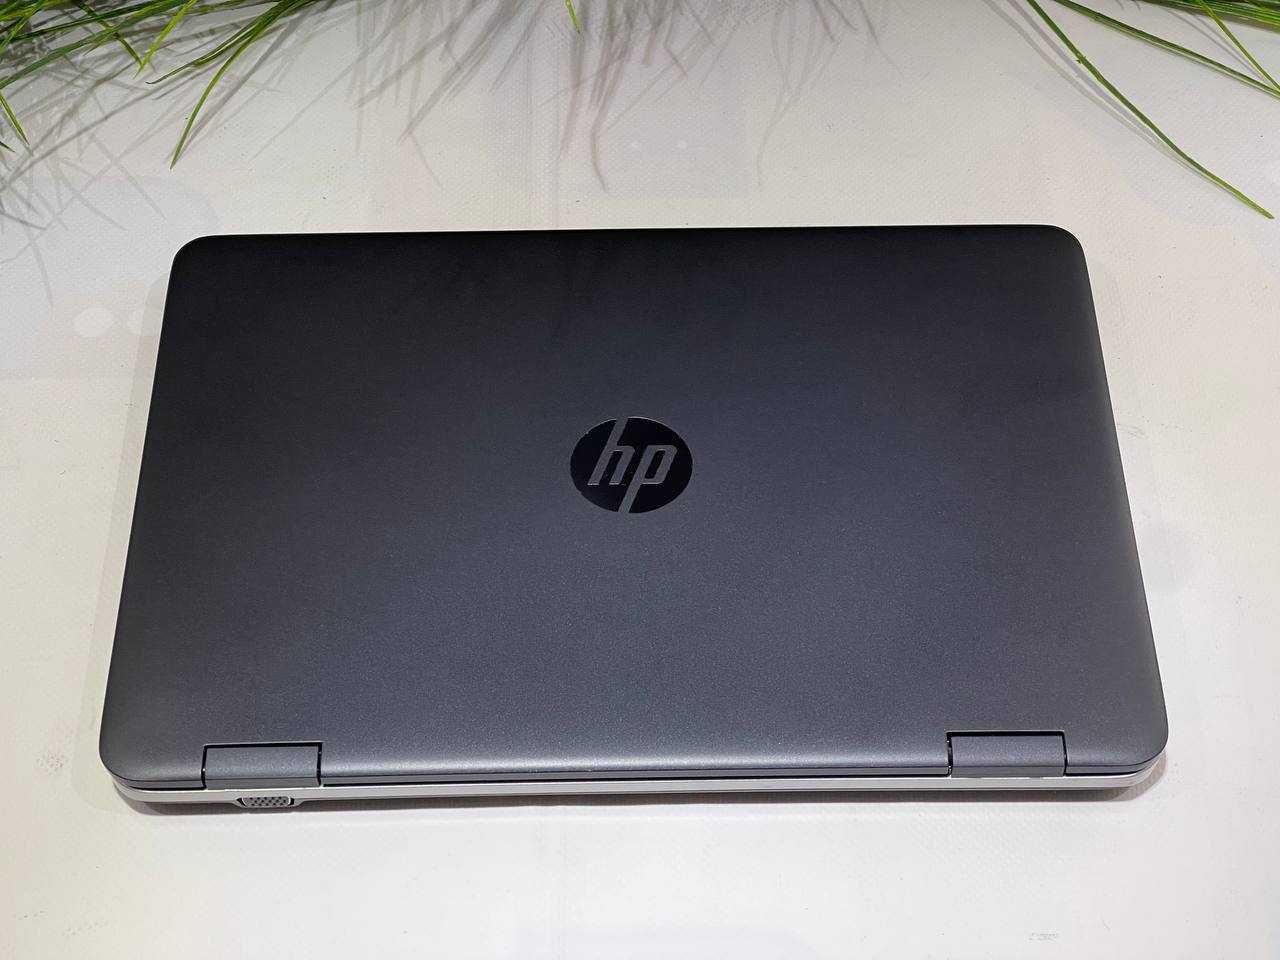 Ноутбук HP 640 G3 ∎i3-7100U∎DDR4-8GB∎SSD-120GB∎вебкамера∎гарантия 1год